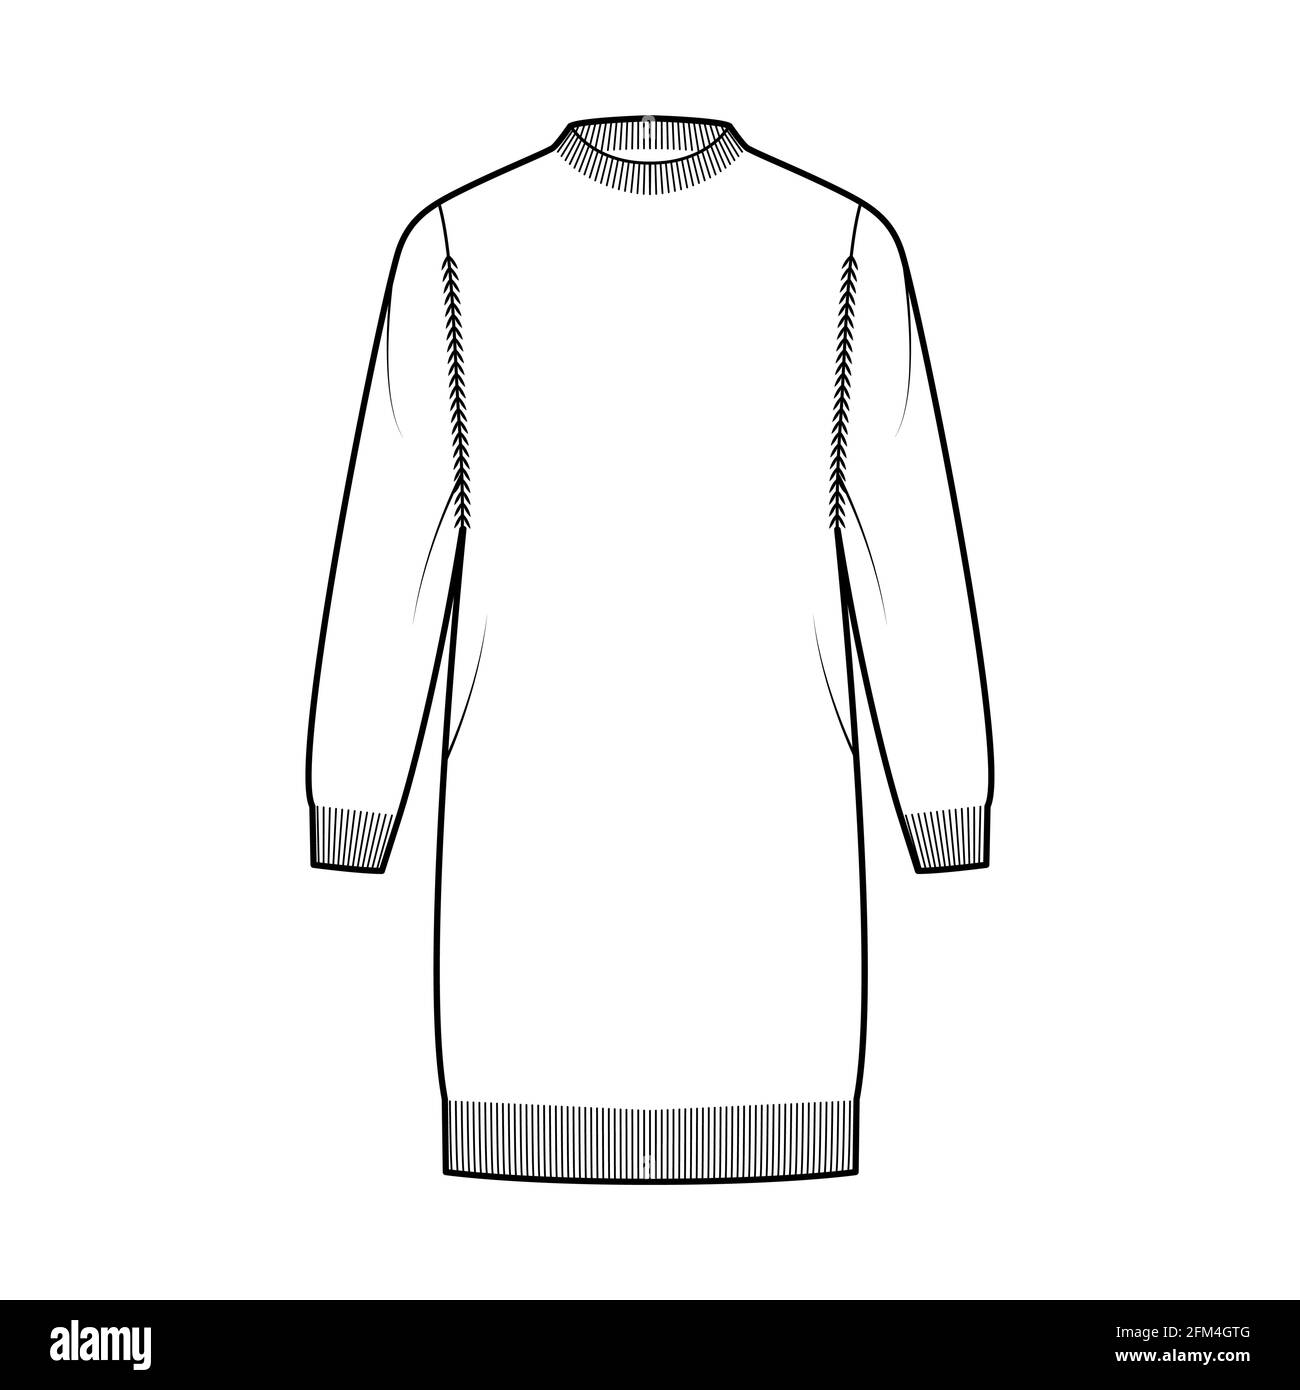 Kleid Fisherman Sweater technische Mode Illustration mit geripptem Rundhalsausschnitt, langen Ärmeln, übergroß, knielang, Strickbesatz. Flatpullover-Bekleidung vorne, in weißer Farbgebung. Frauen Männer Unisex CAD Mockup Stock Vektor